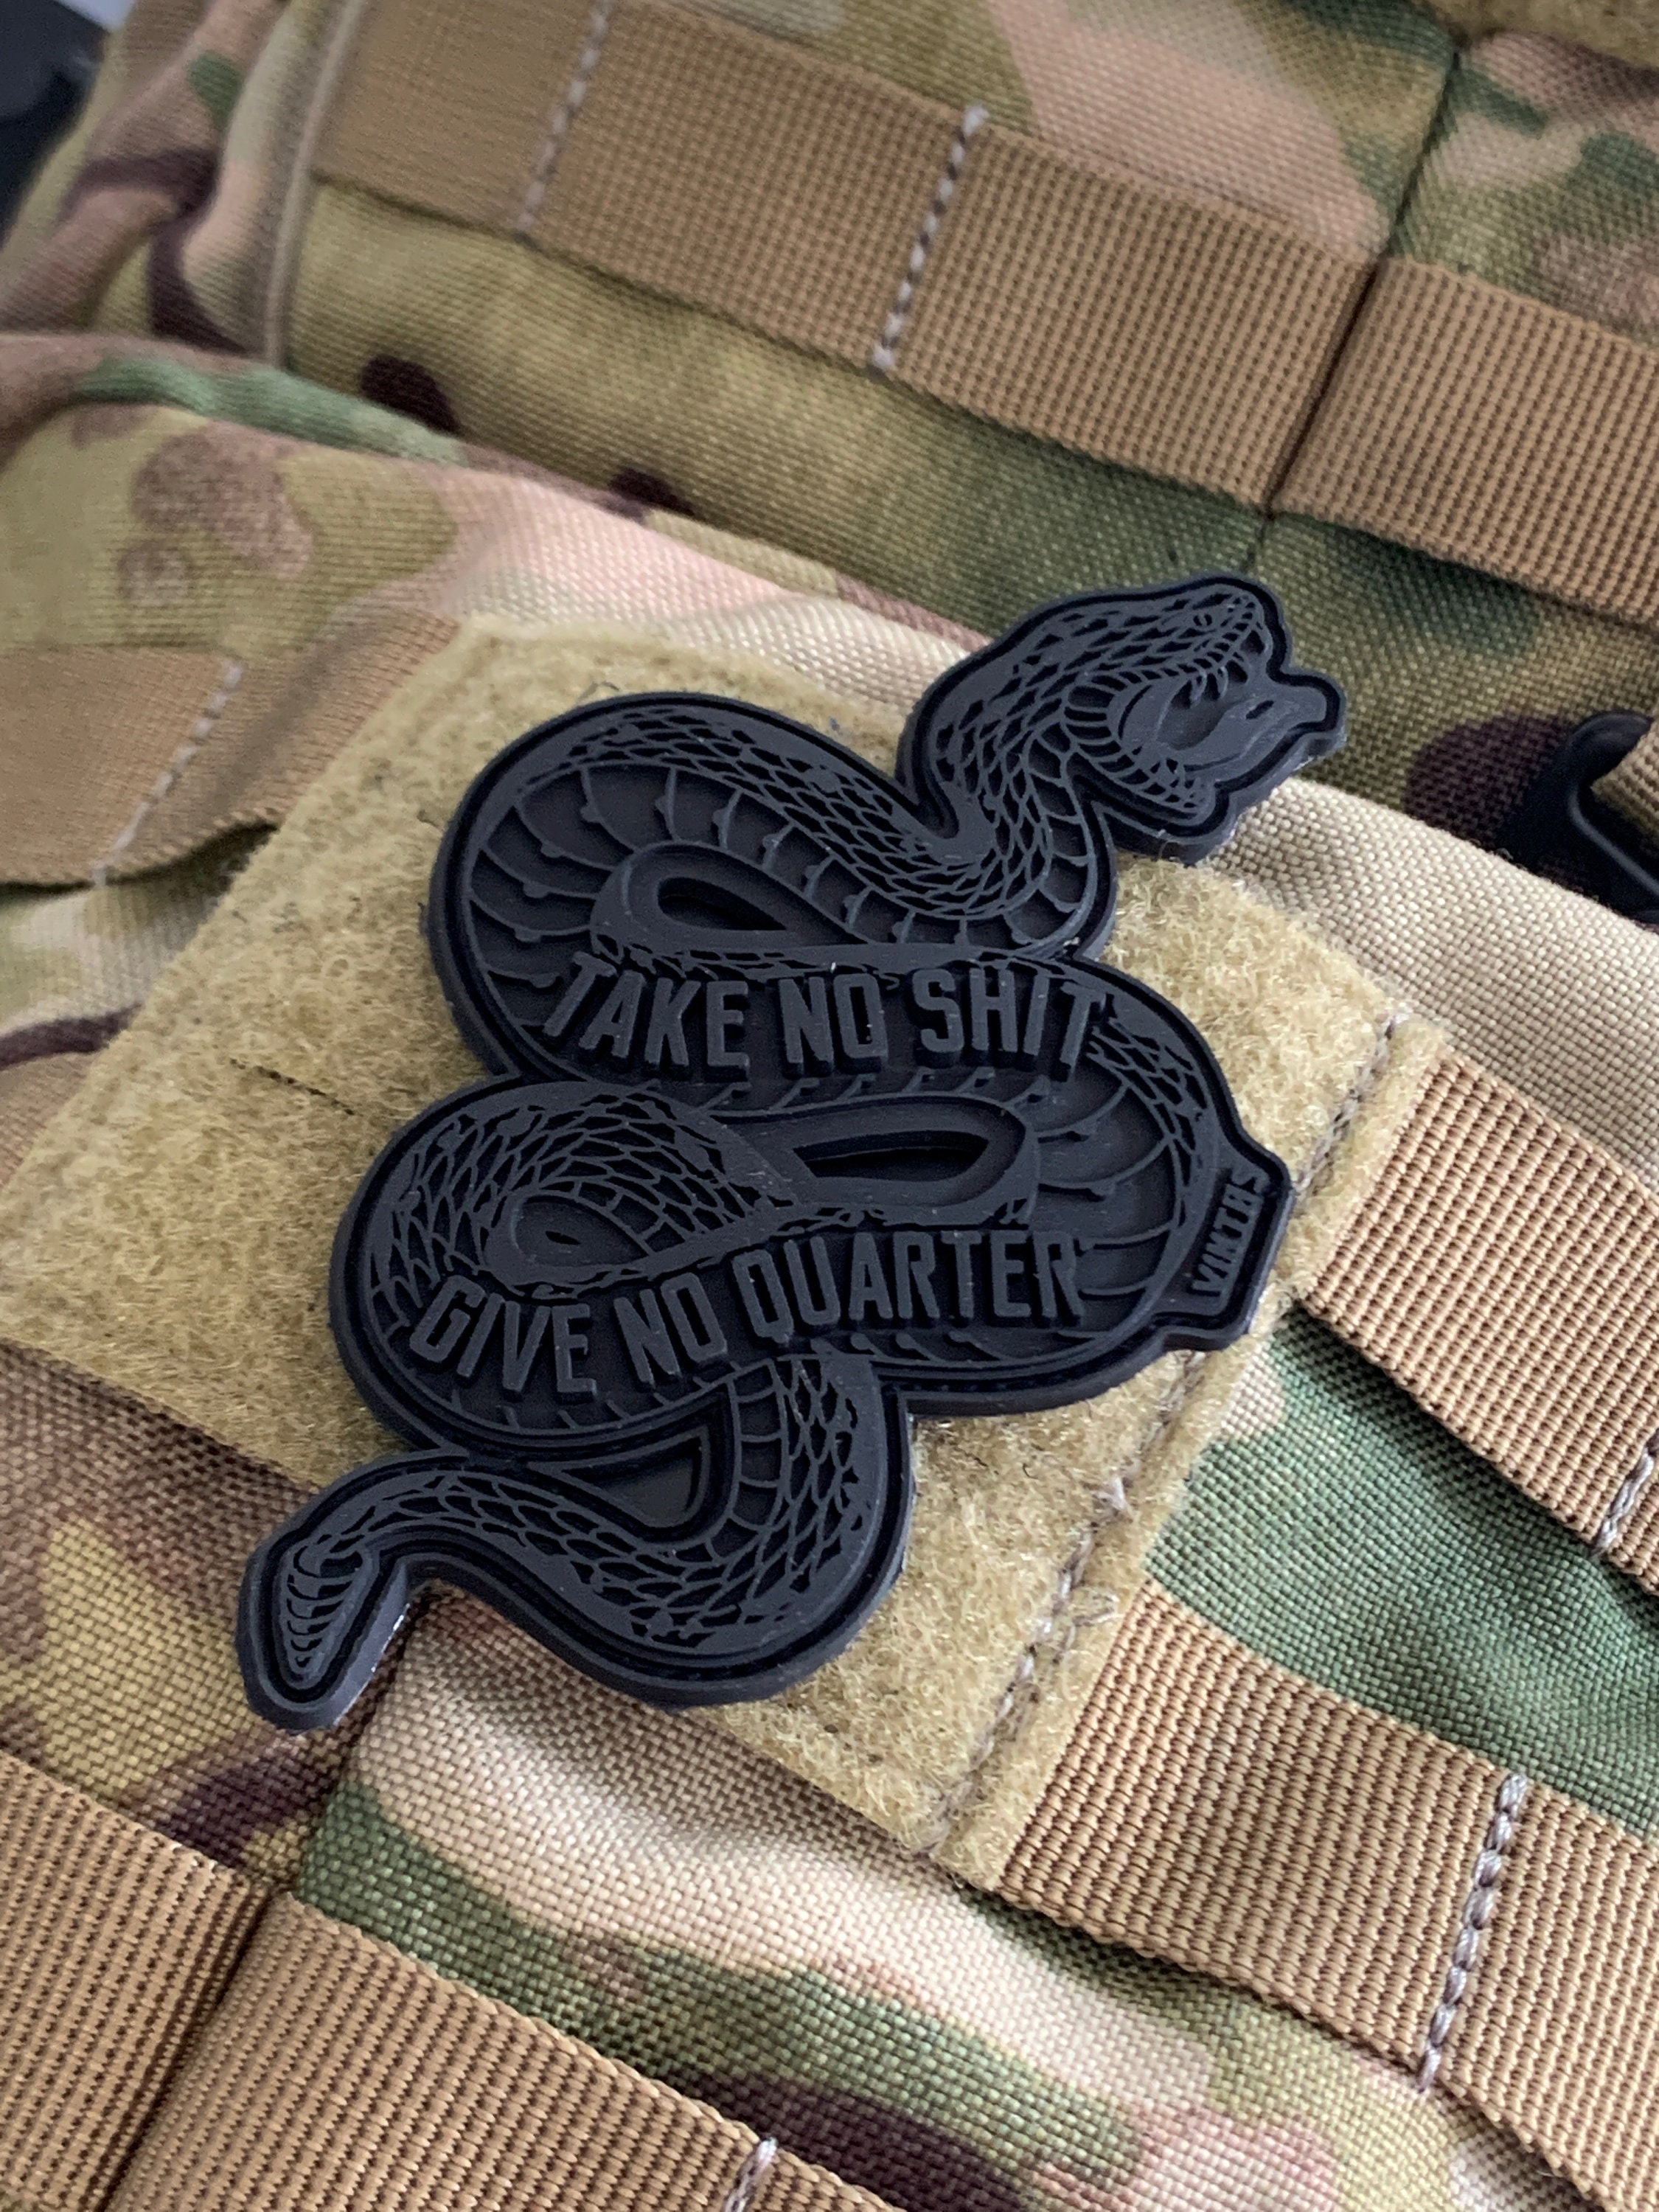 Snake patch - Brevet para personnalisé Toile OD marquage OR Dos velcro  mâle #snakepatch #carentan #teamsnakepatch #normandie #patch #armée #para  #parachutiste #vétéran #kaki #militaire #scratch #France #madeinfrance #TAP